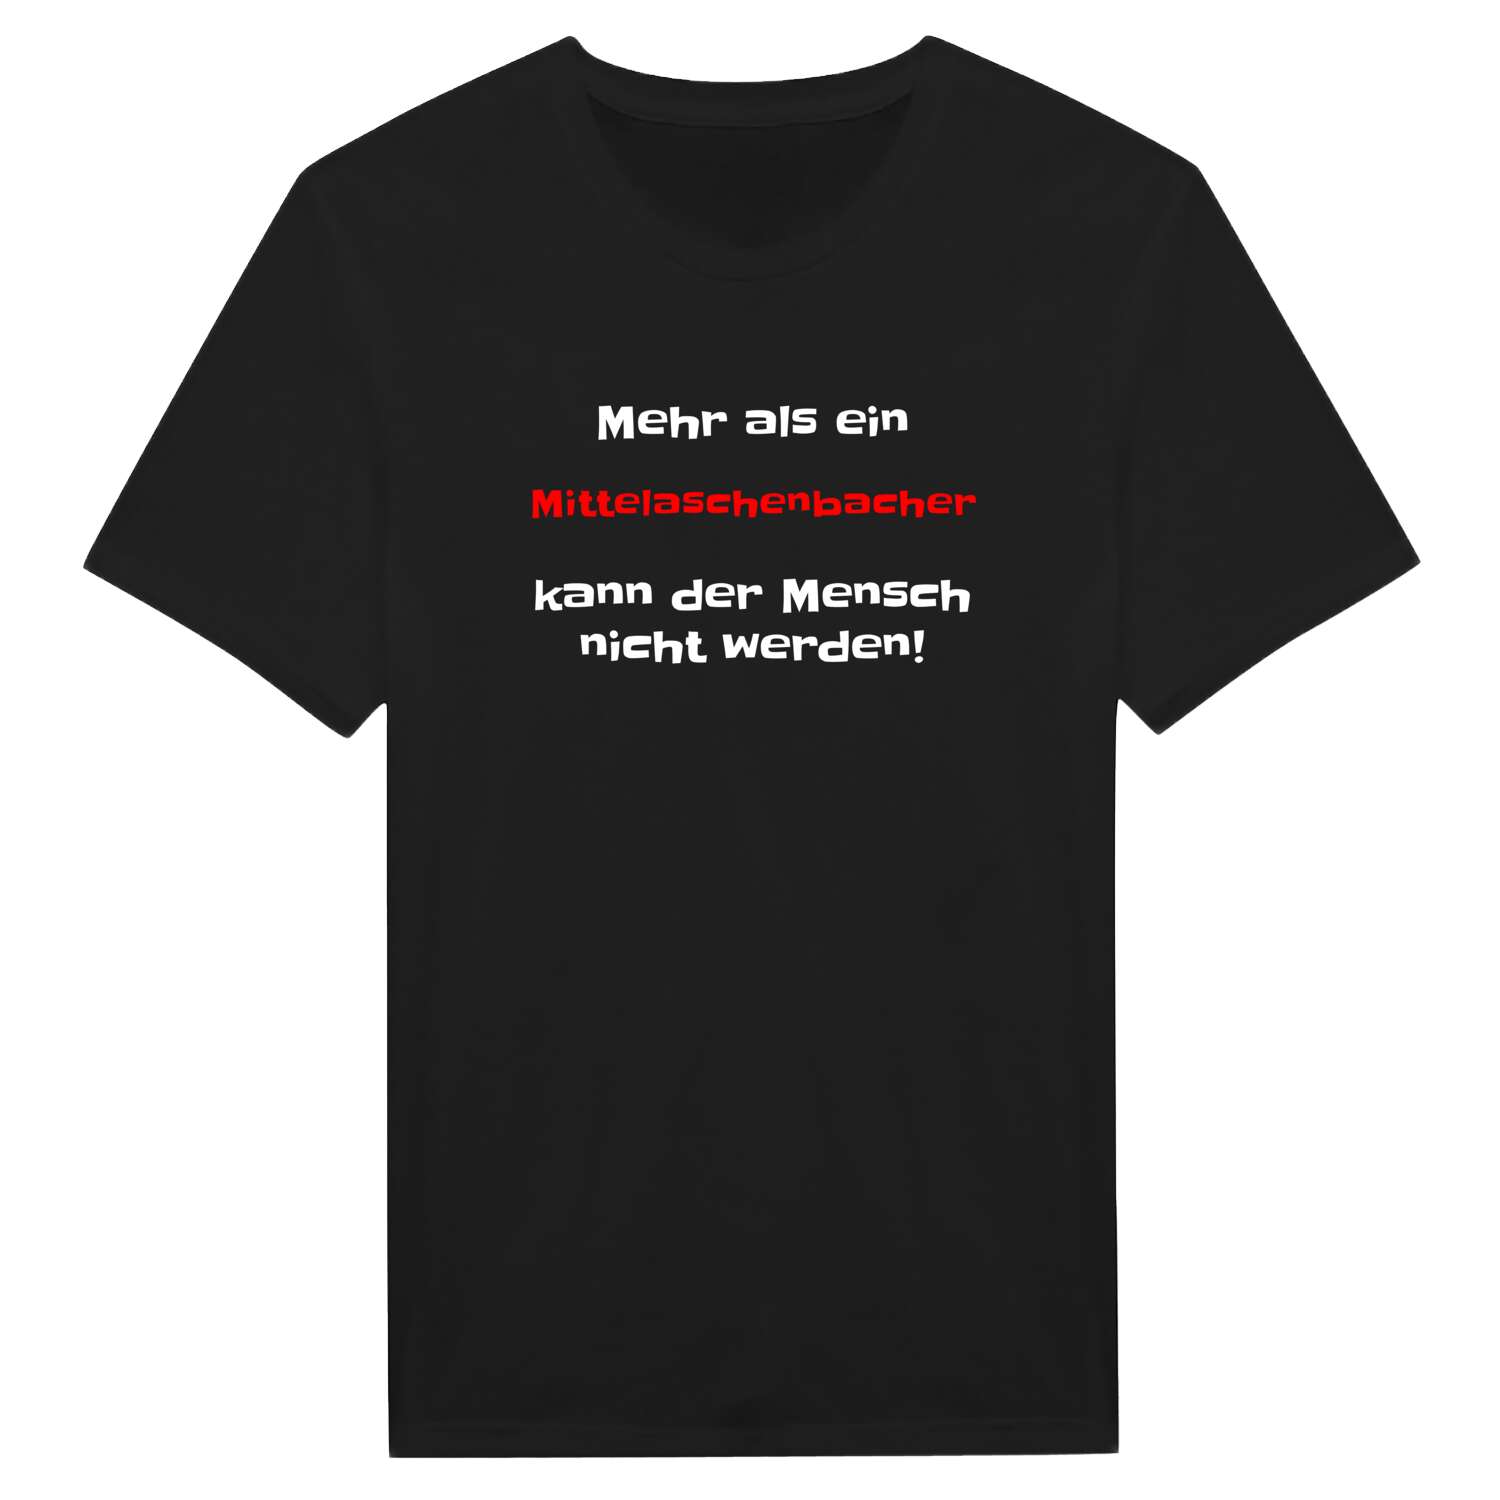 Mittelaschenbach T-Shirt »Mehr als ein«